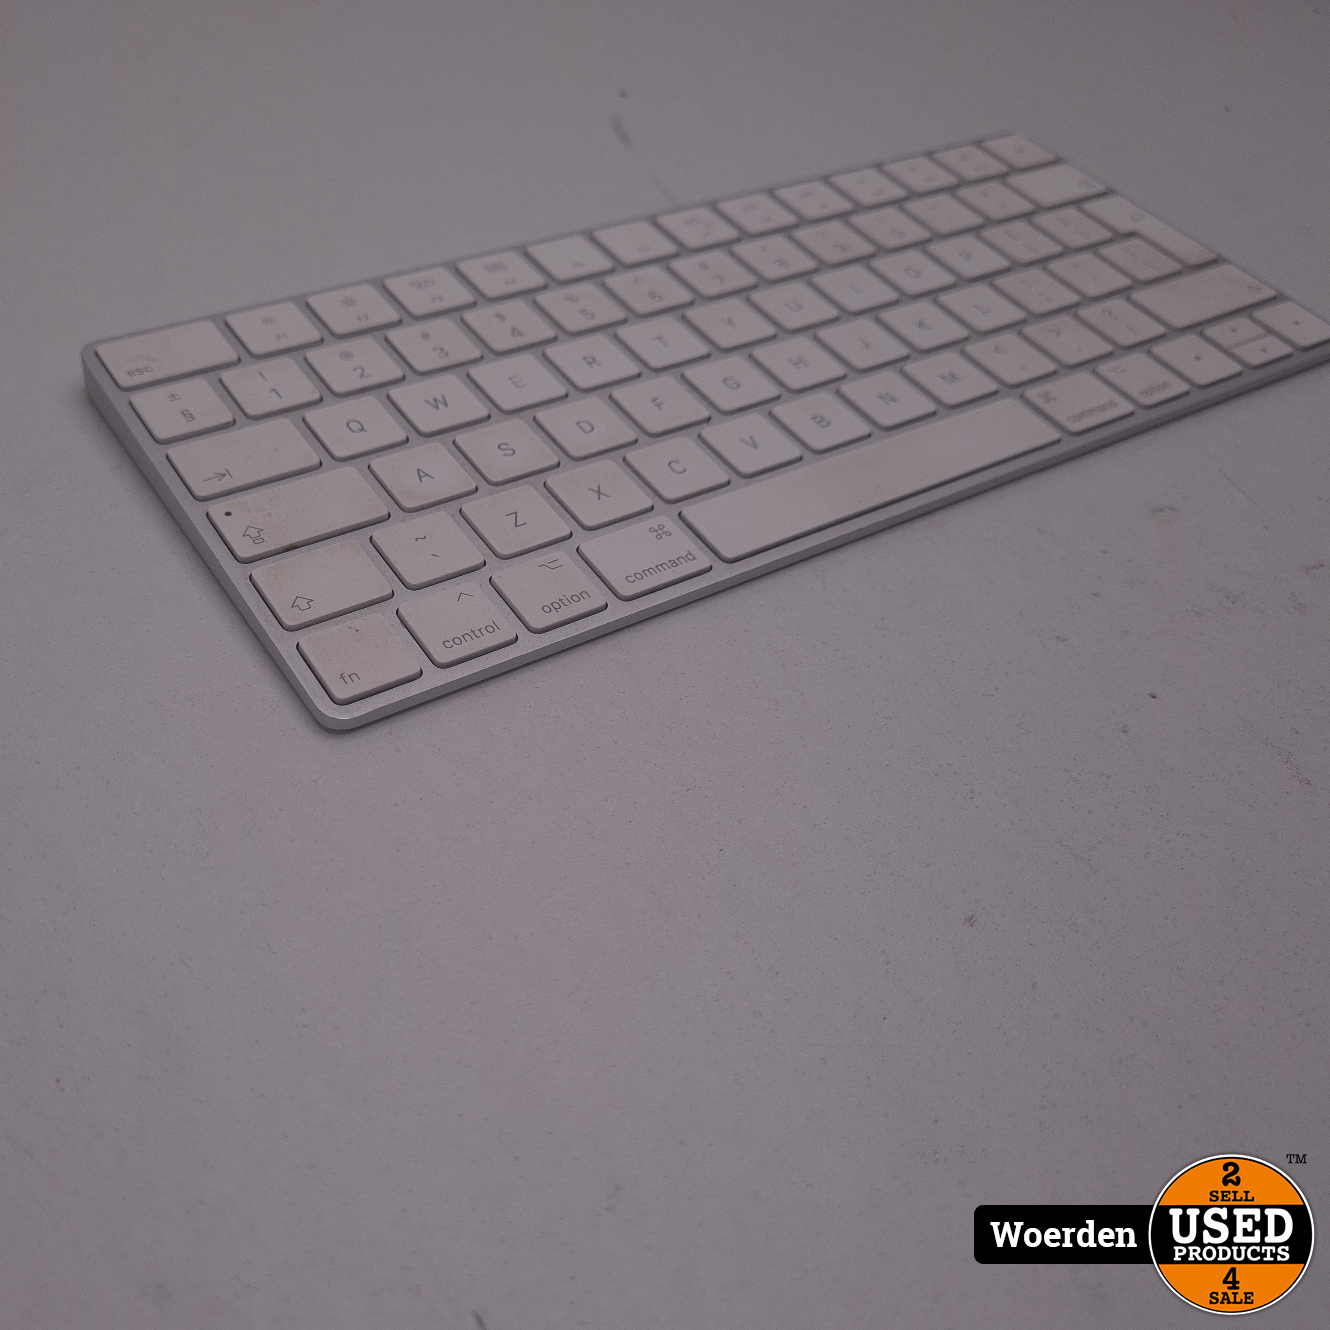 Helaas Buik schoorsteen Apple Magic Keyboard Draadloos Toetsenbord met Garantie - Used Products  Woerden